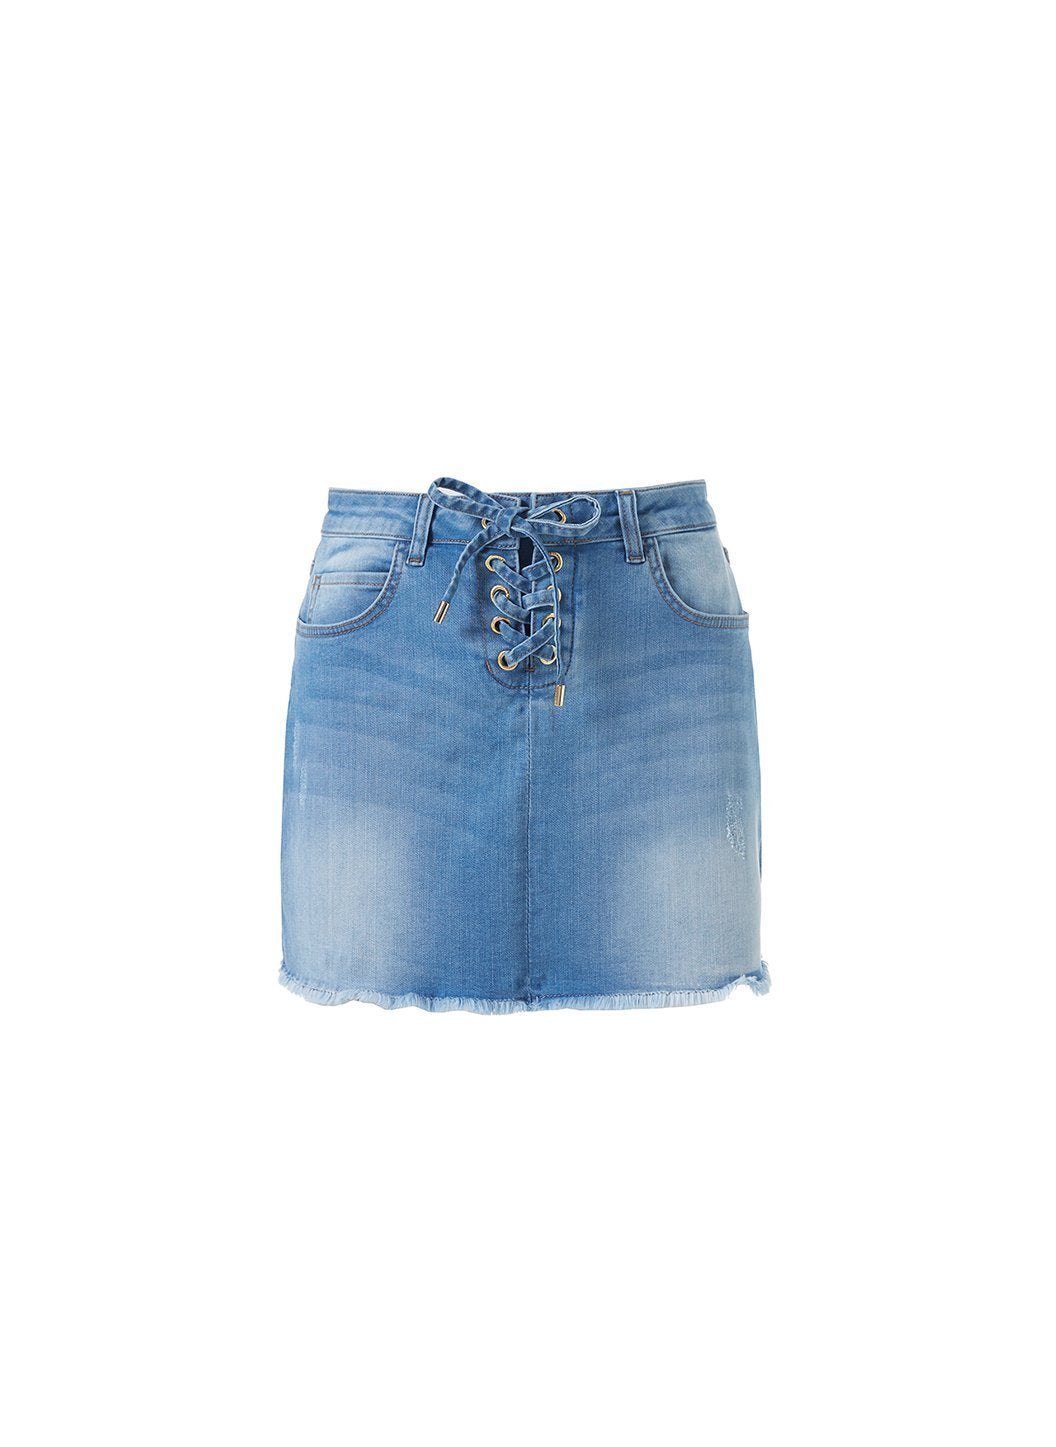 keely blue denim lace up short skirt Cutout